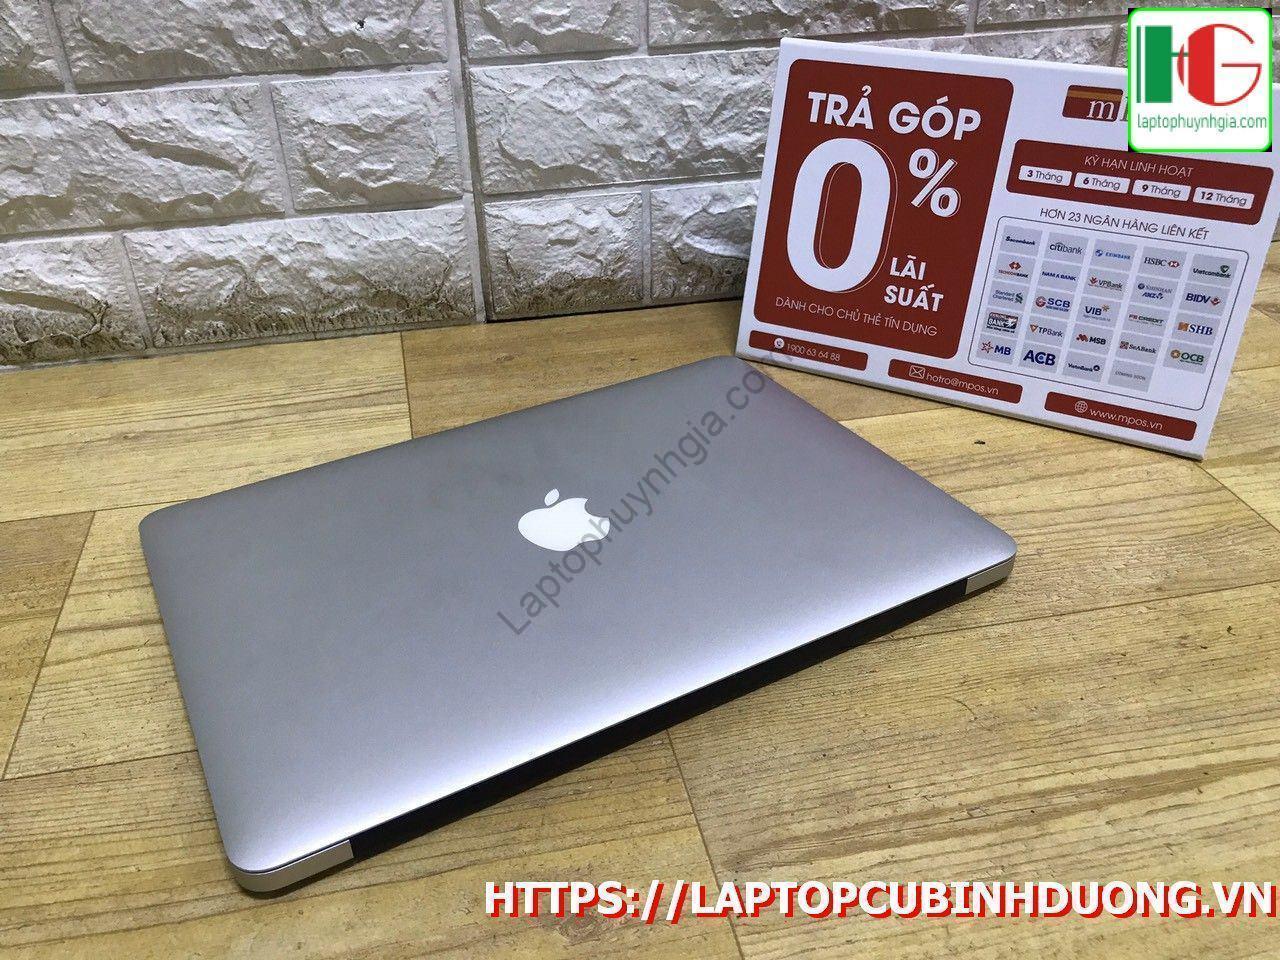 Macbook Air 2017 I5 8g Ssd 128g Lcd 13 Laptopcubinhduong.vn [kích Thước Gốc] Result